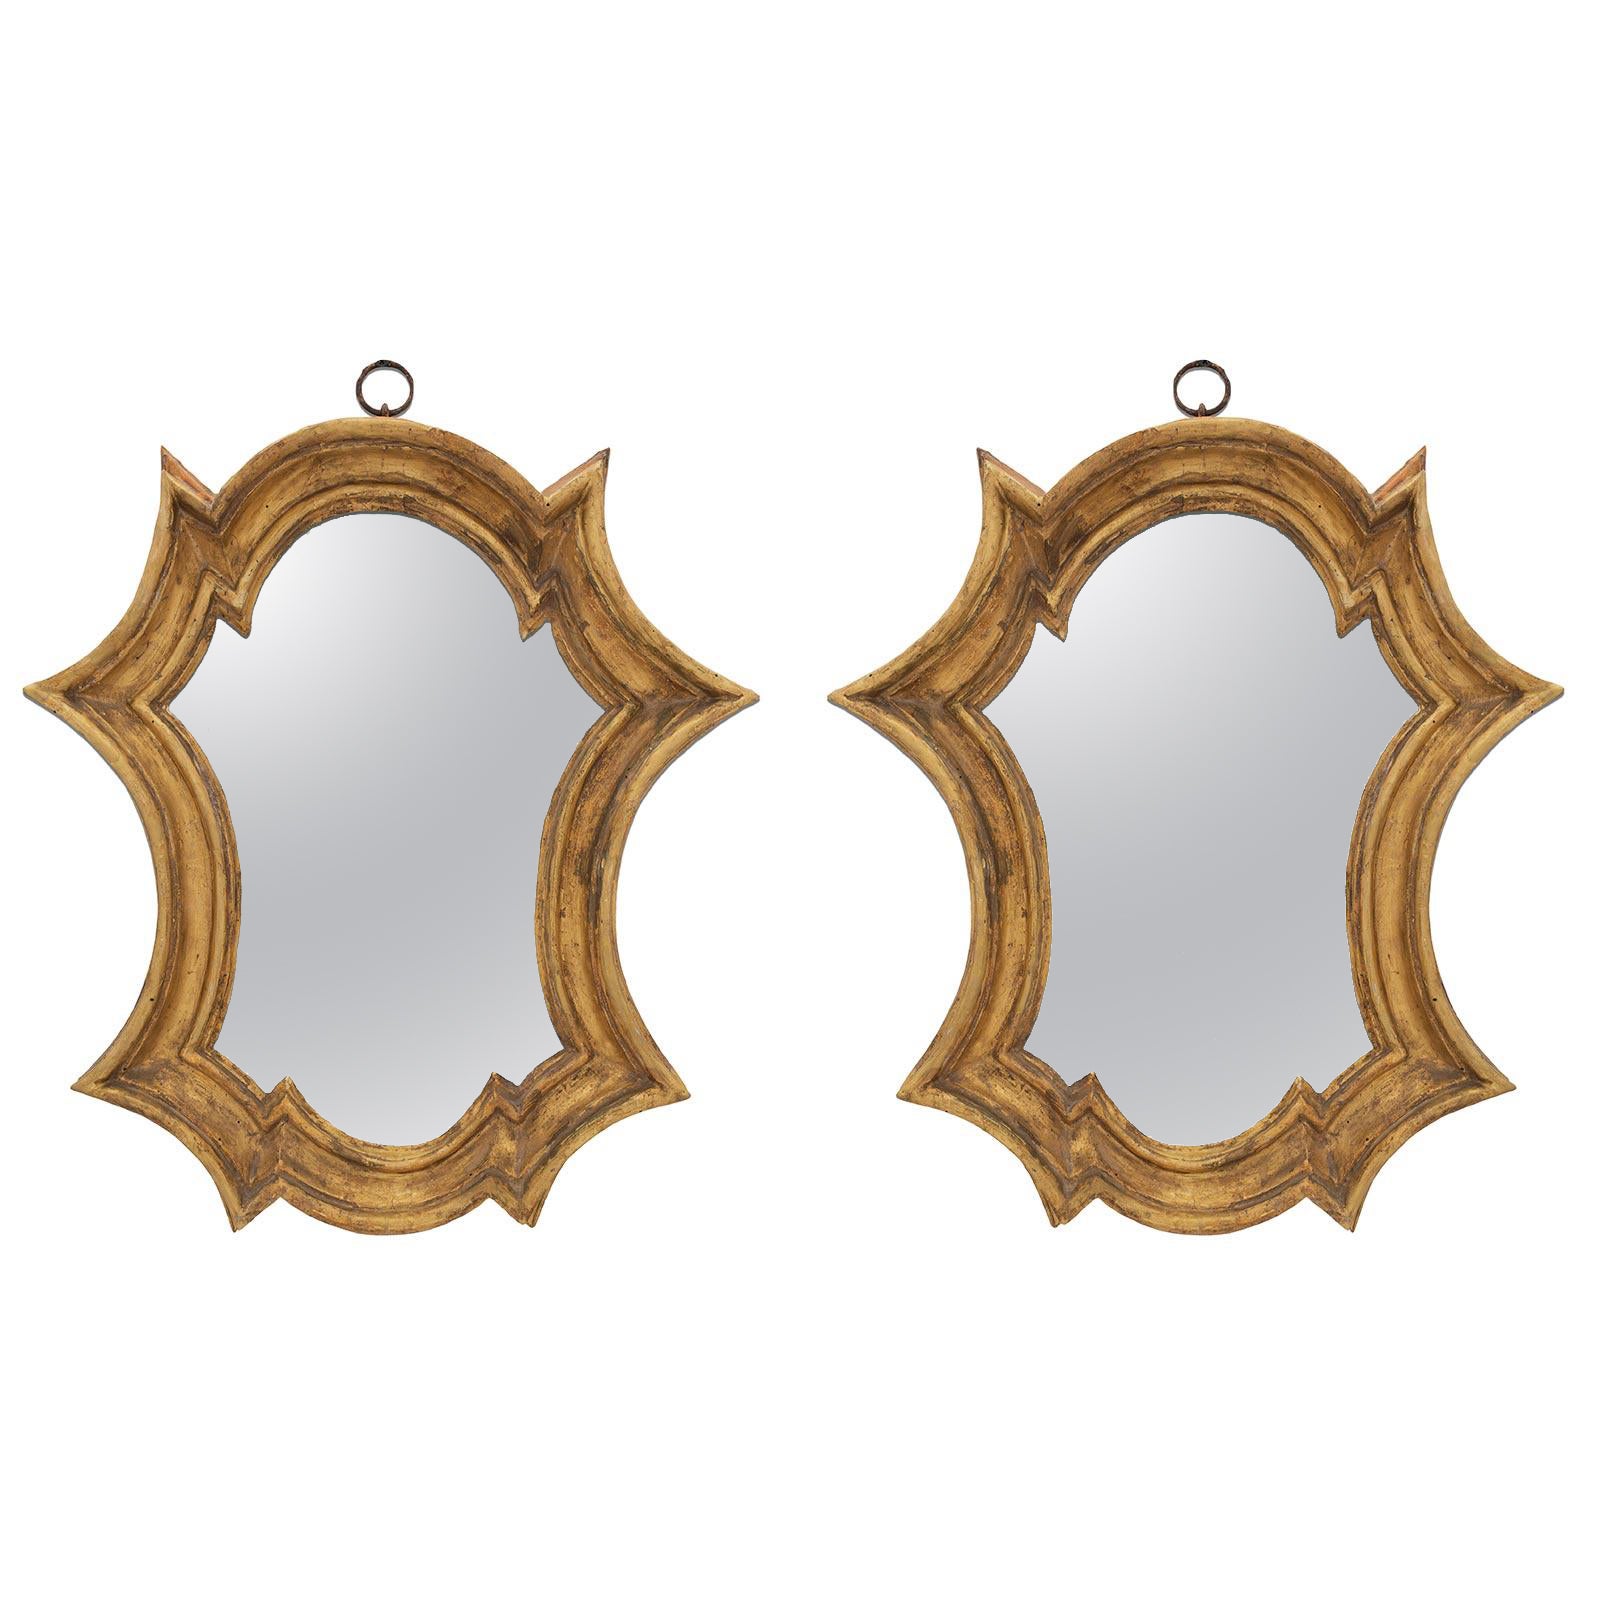 Paar italienische Spiegel aus dem frühen 18. Jahrhundert aus der Barockzeit